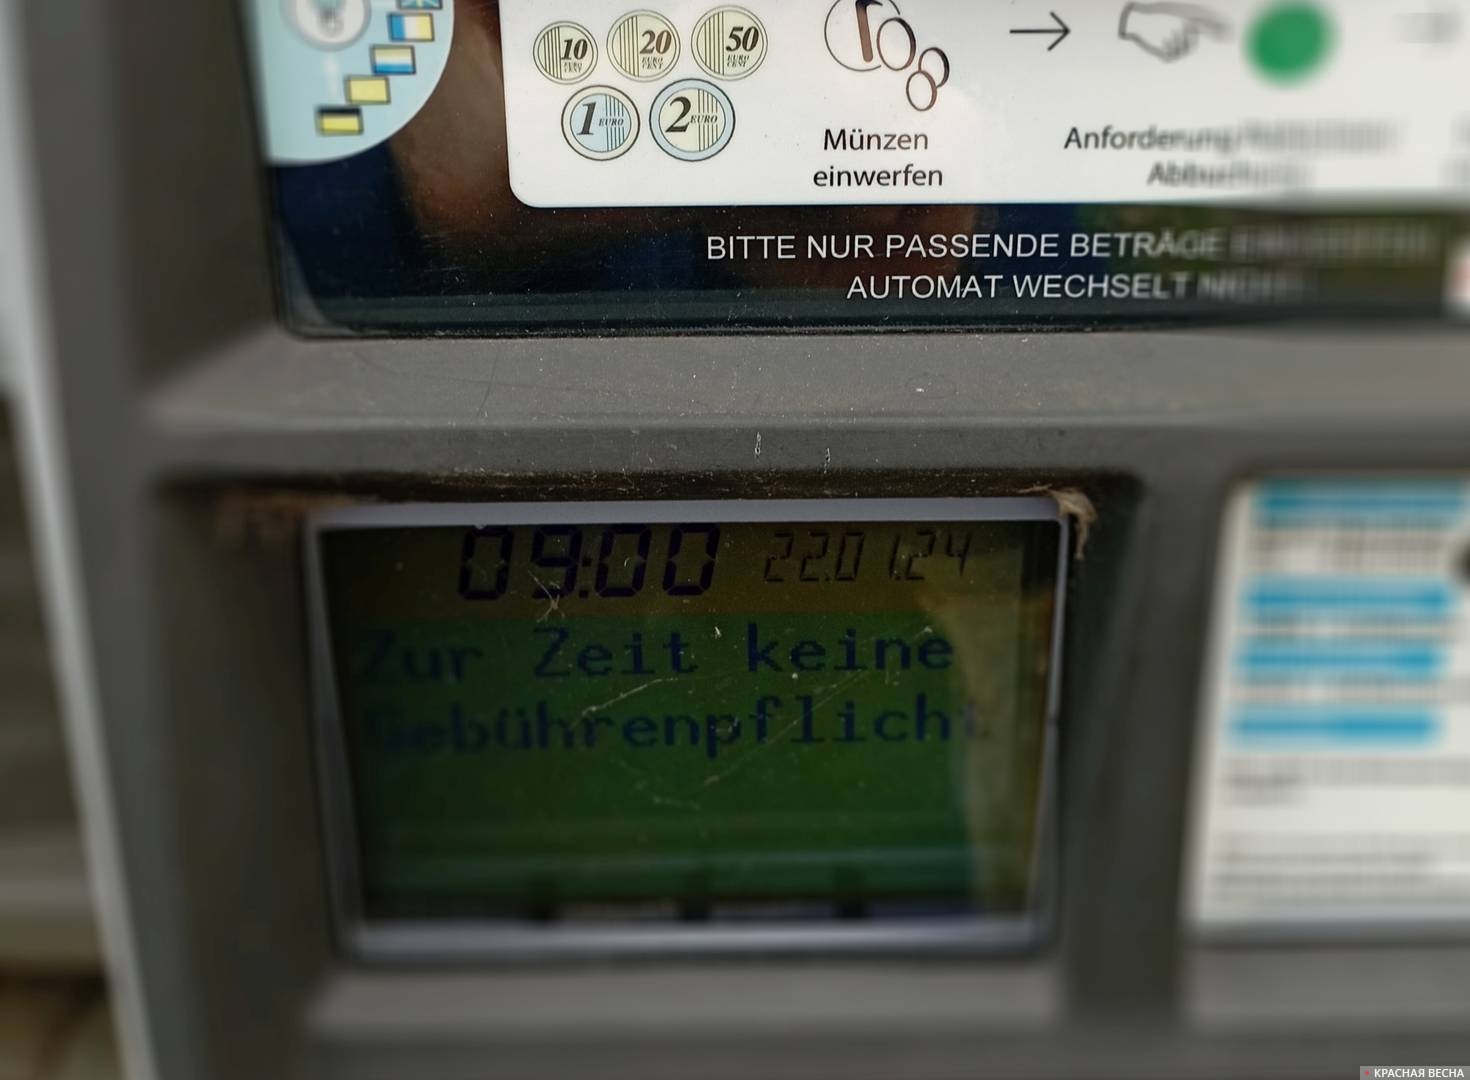 Дисплей немецкого парковочного автомата. В настоящее время оплата парковки необязательна